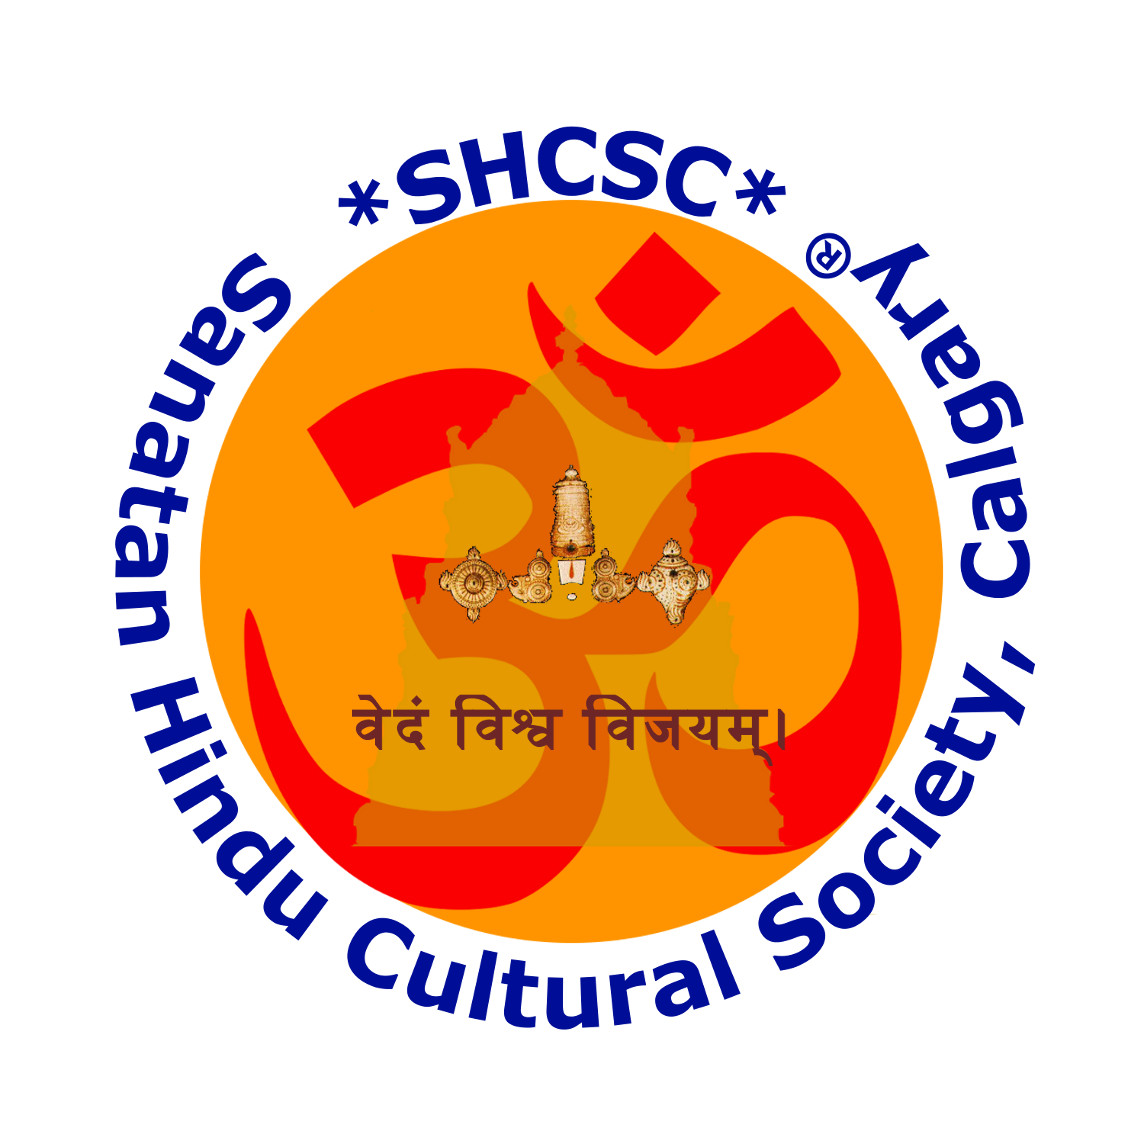 About SBCA - Sanatan Bengali Cultural Association